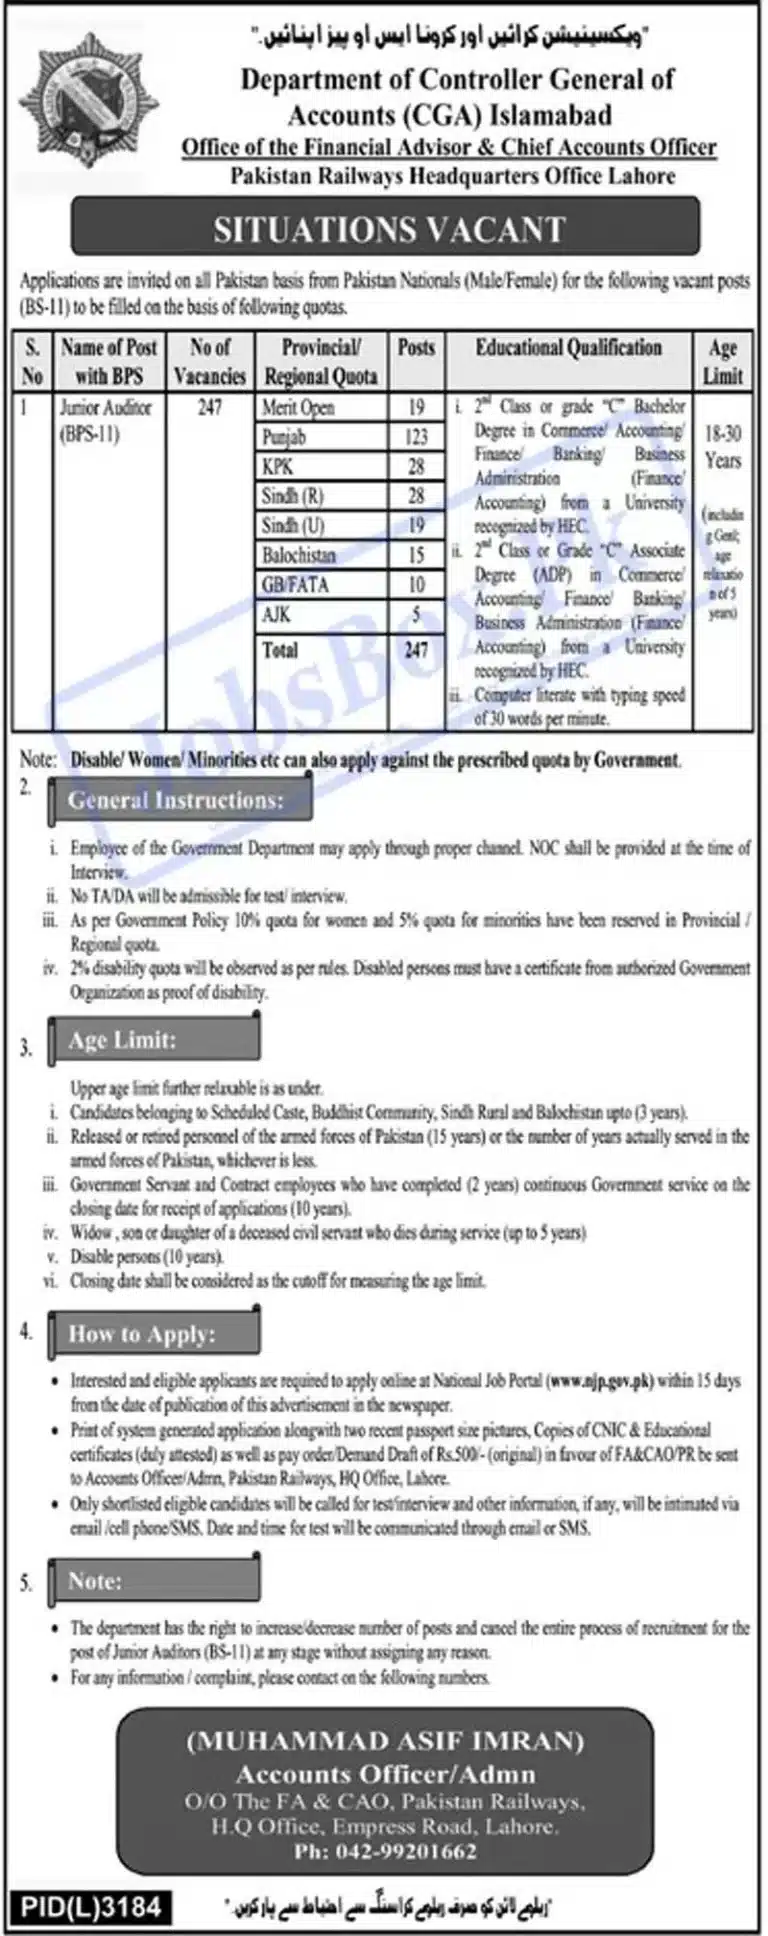 Pakistan Railways Jobs 2023